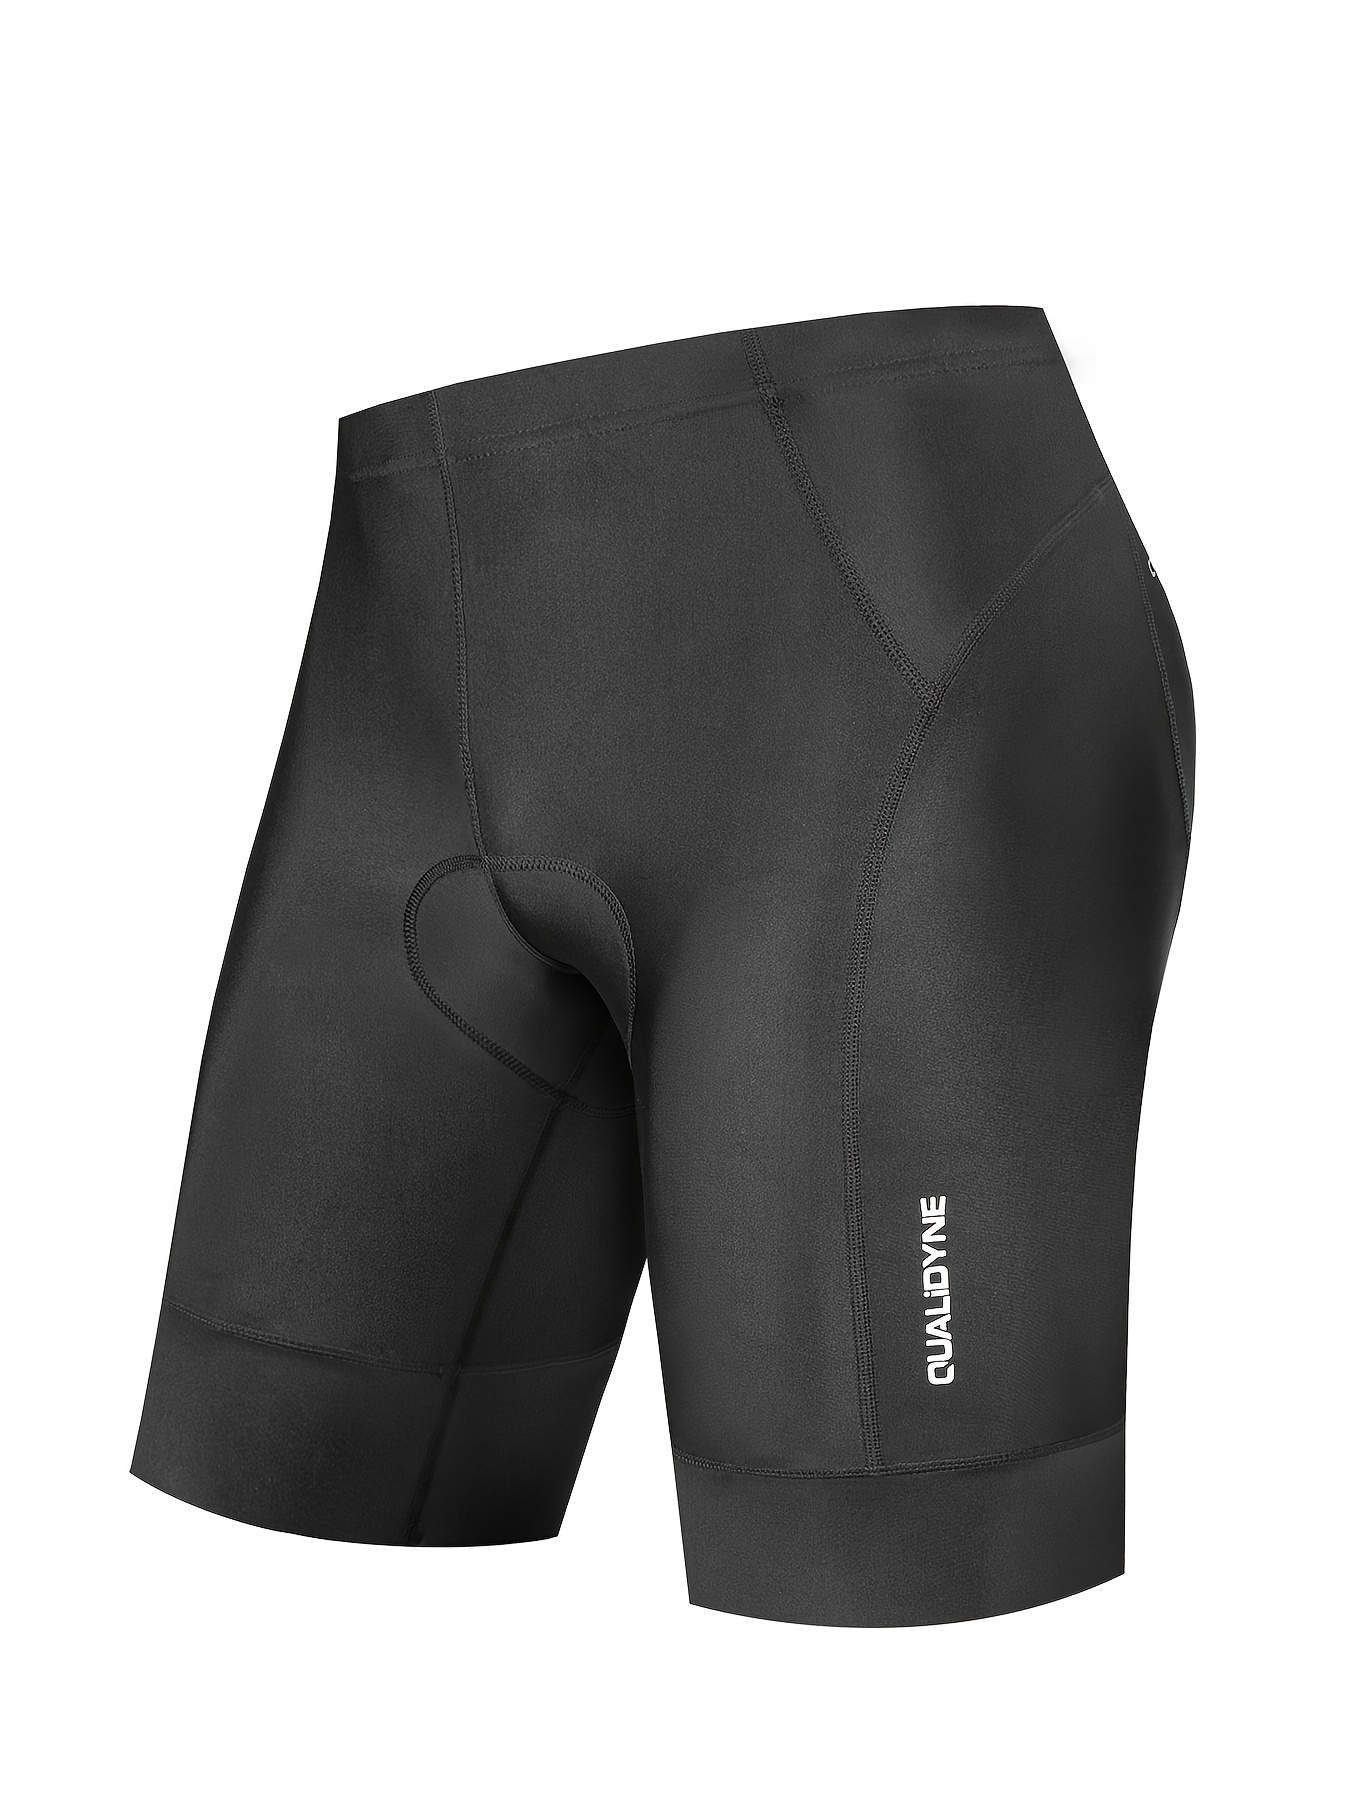 Pantalones acolchados para ciclismo para hombres, pantalones  antideslizantes transpirables para bicicleta de carretera y montaña MTB